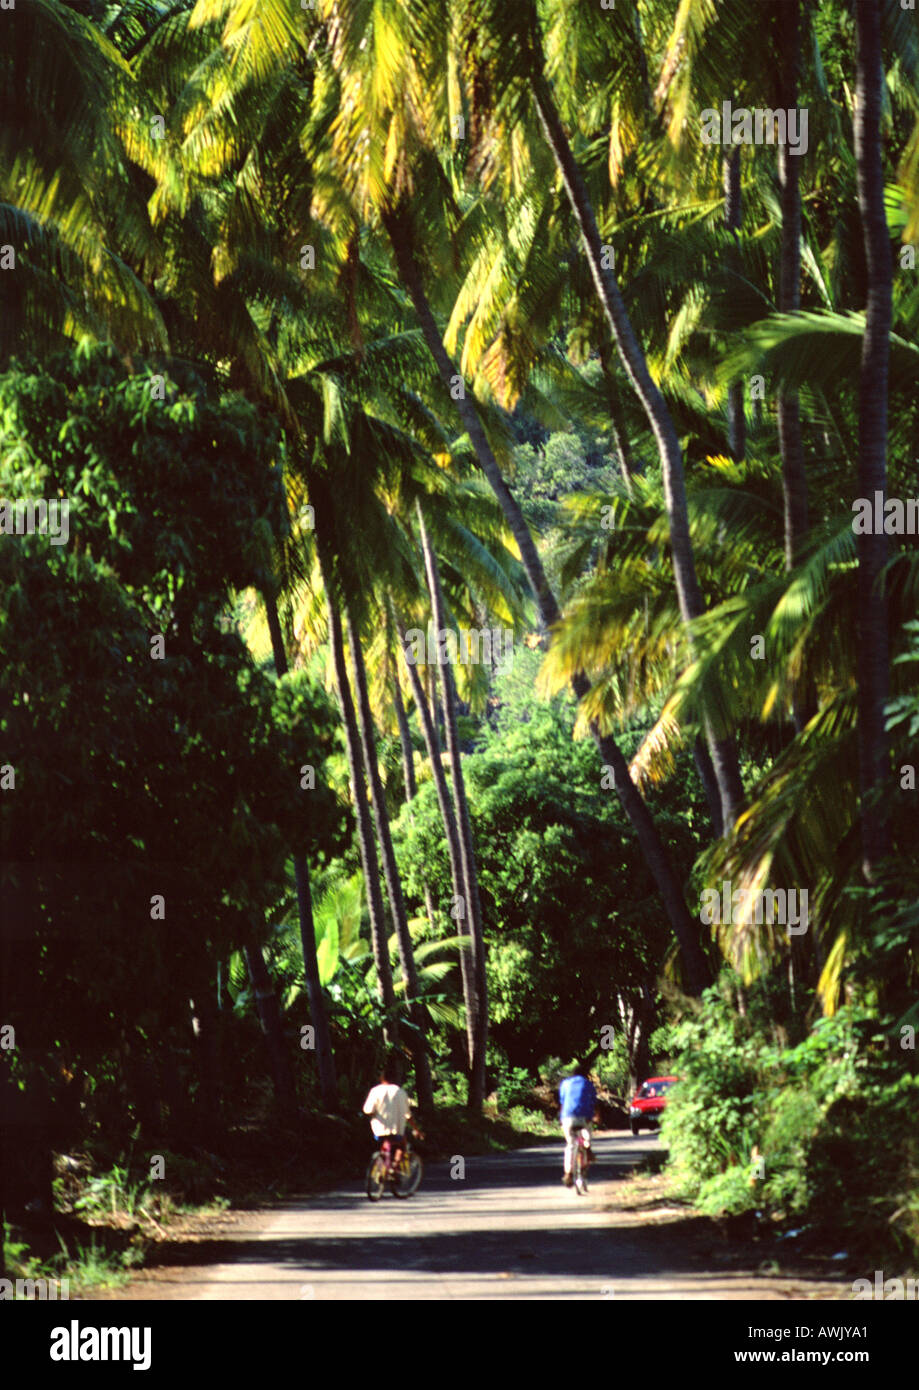 La réunion, les gens sur des vélos sur le chemin à travers la forêt tropicale Banque D'Images